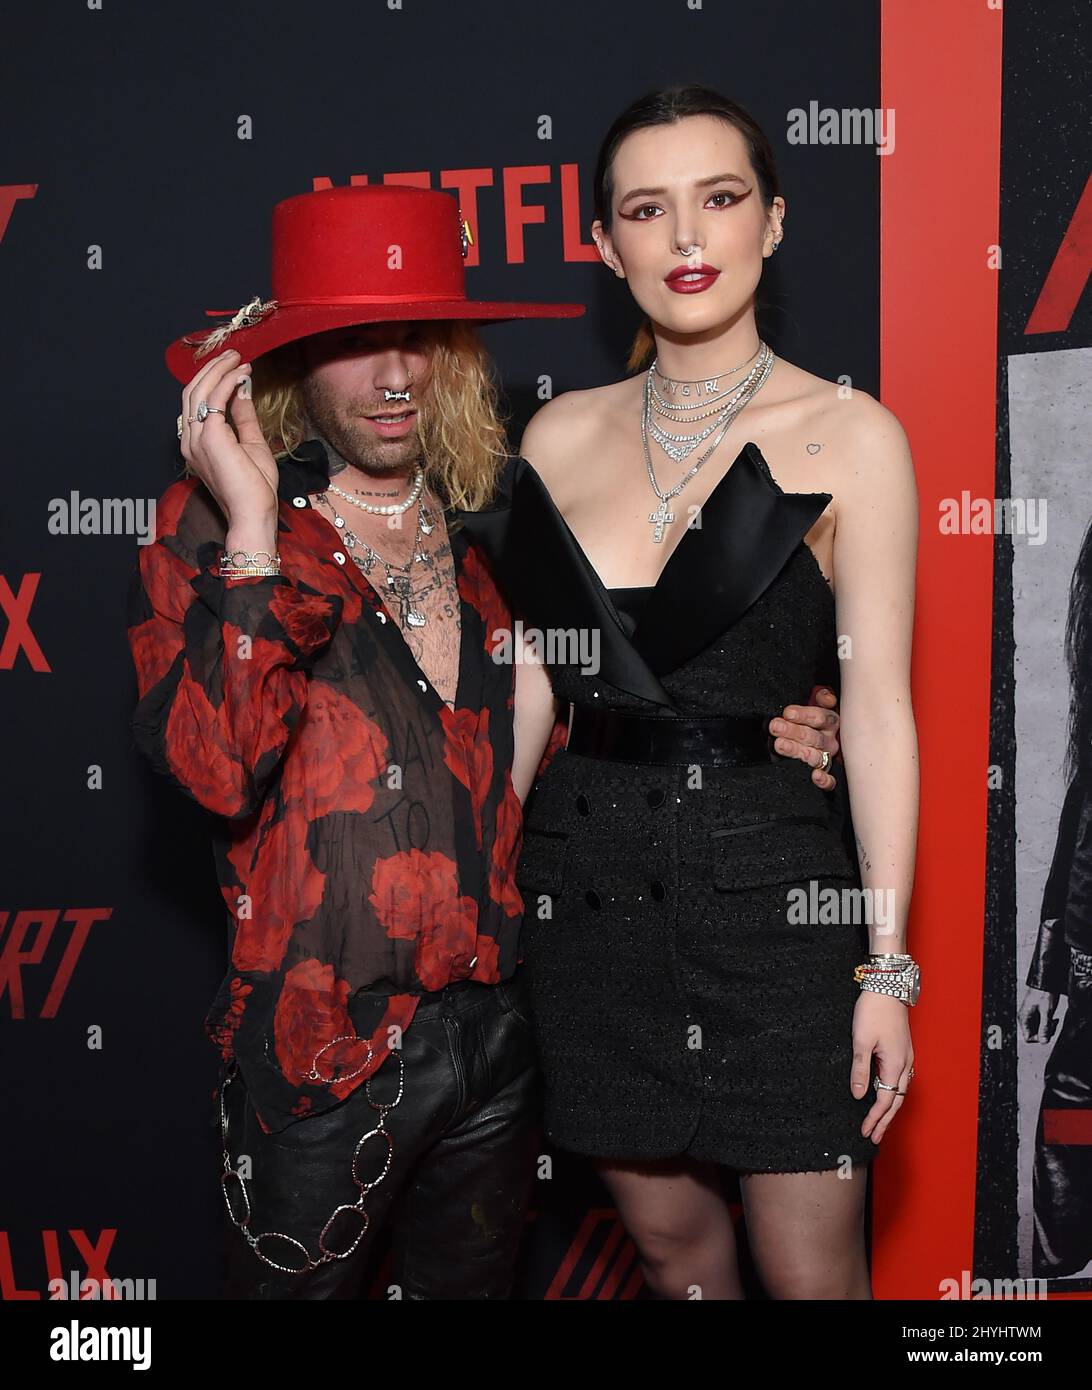 Mod Sun e Bella Thorne alla prima mondiale 'The Dirt' di Netflix, tenutasi all'Arclight Hollywood Cinerama Dome il 18 marzo 2019 a Hollywood, CA. Foto Stock